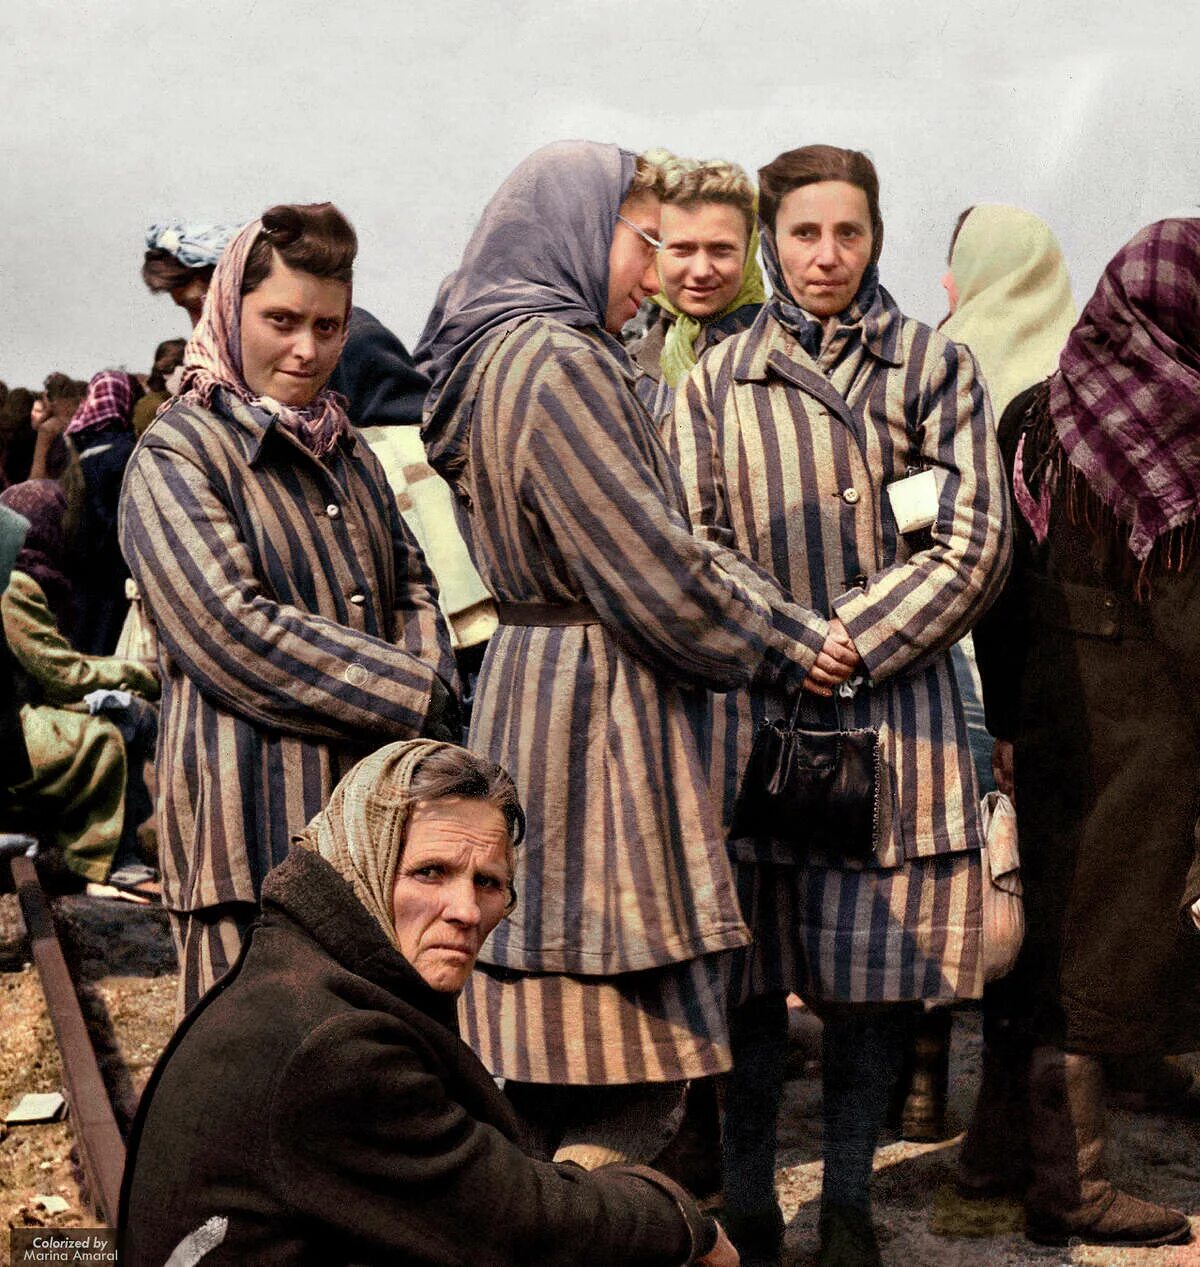 Пленный еврей. Равенсбрюк 1984. Освенцим одежда заключенных.